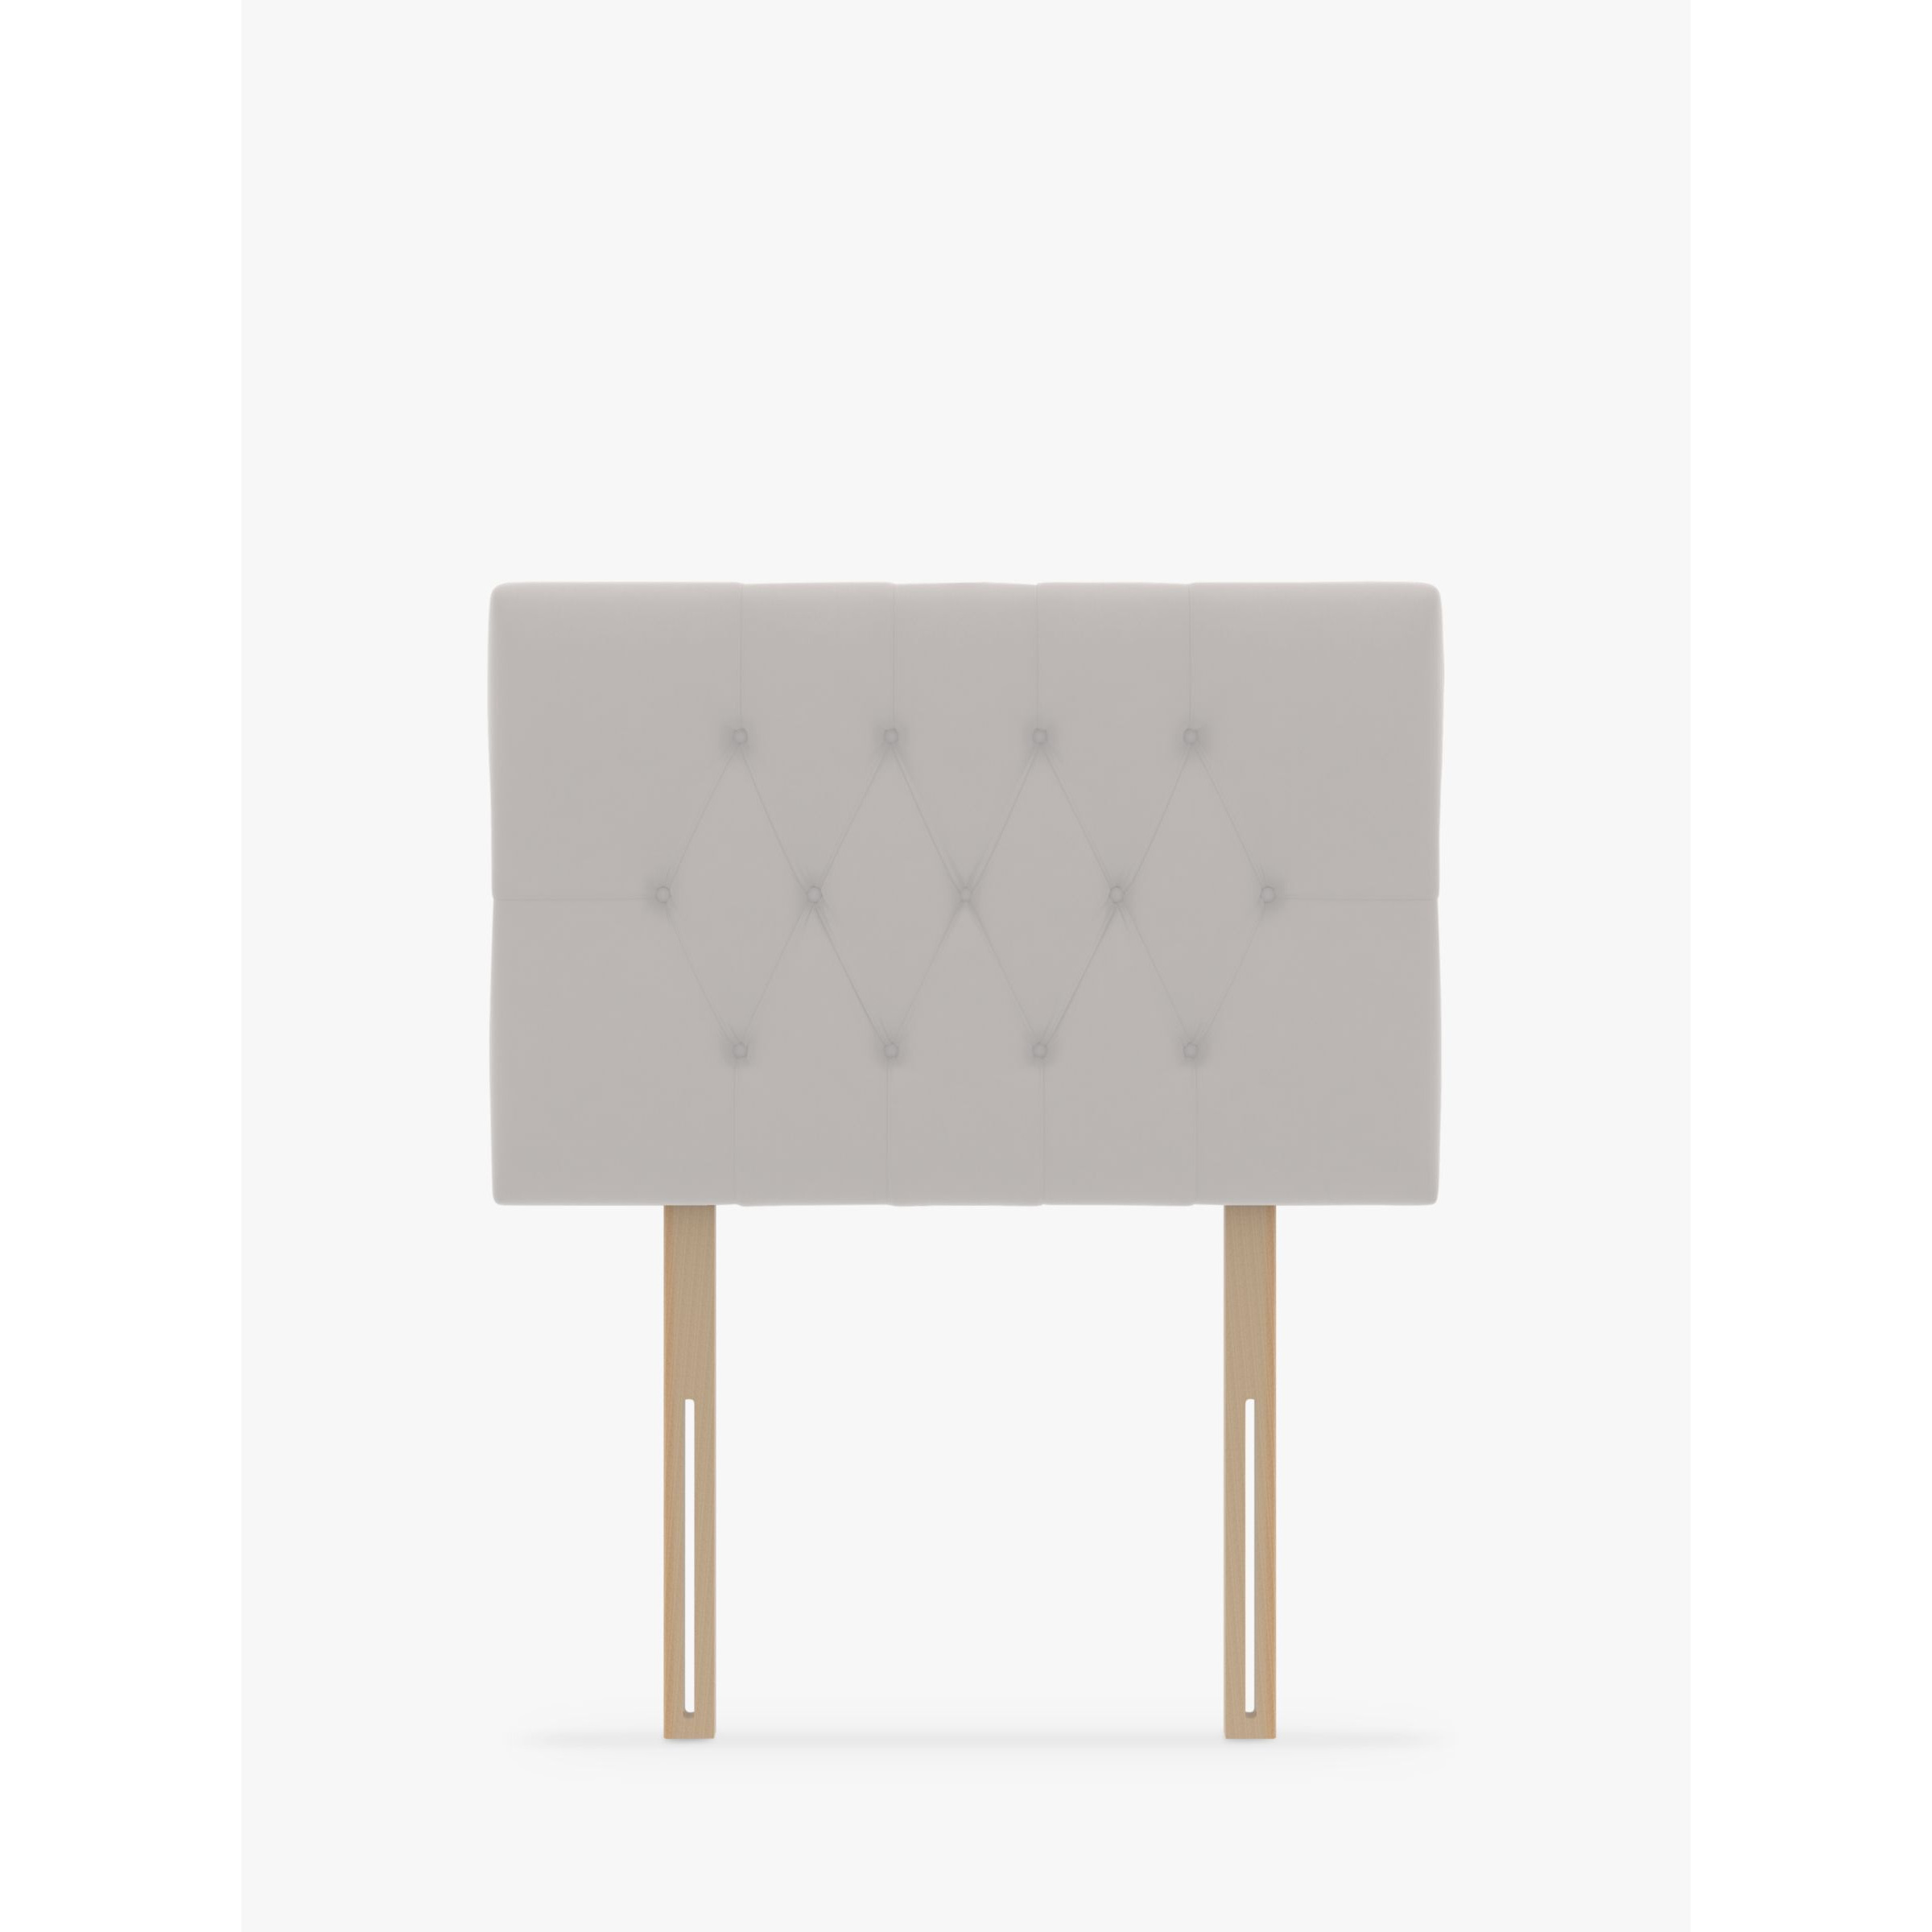 Koti Home Eden Upholstered Headboard, Single - image 1